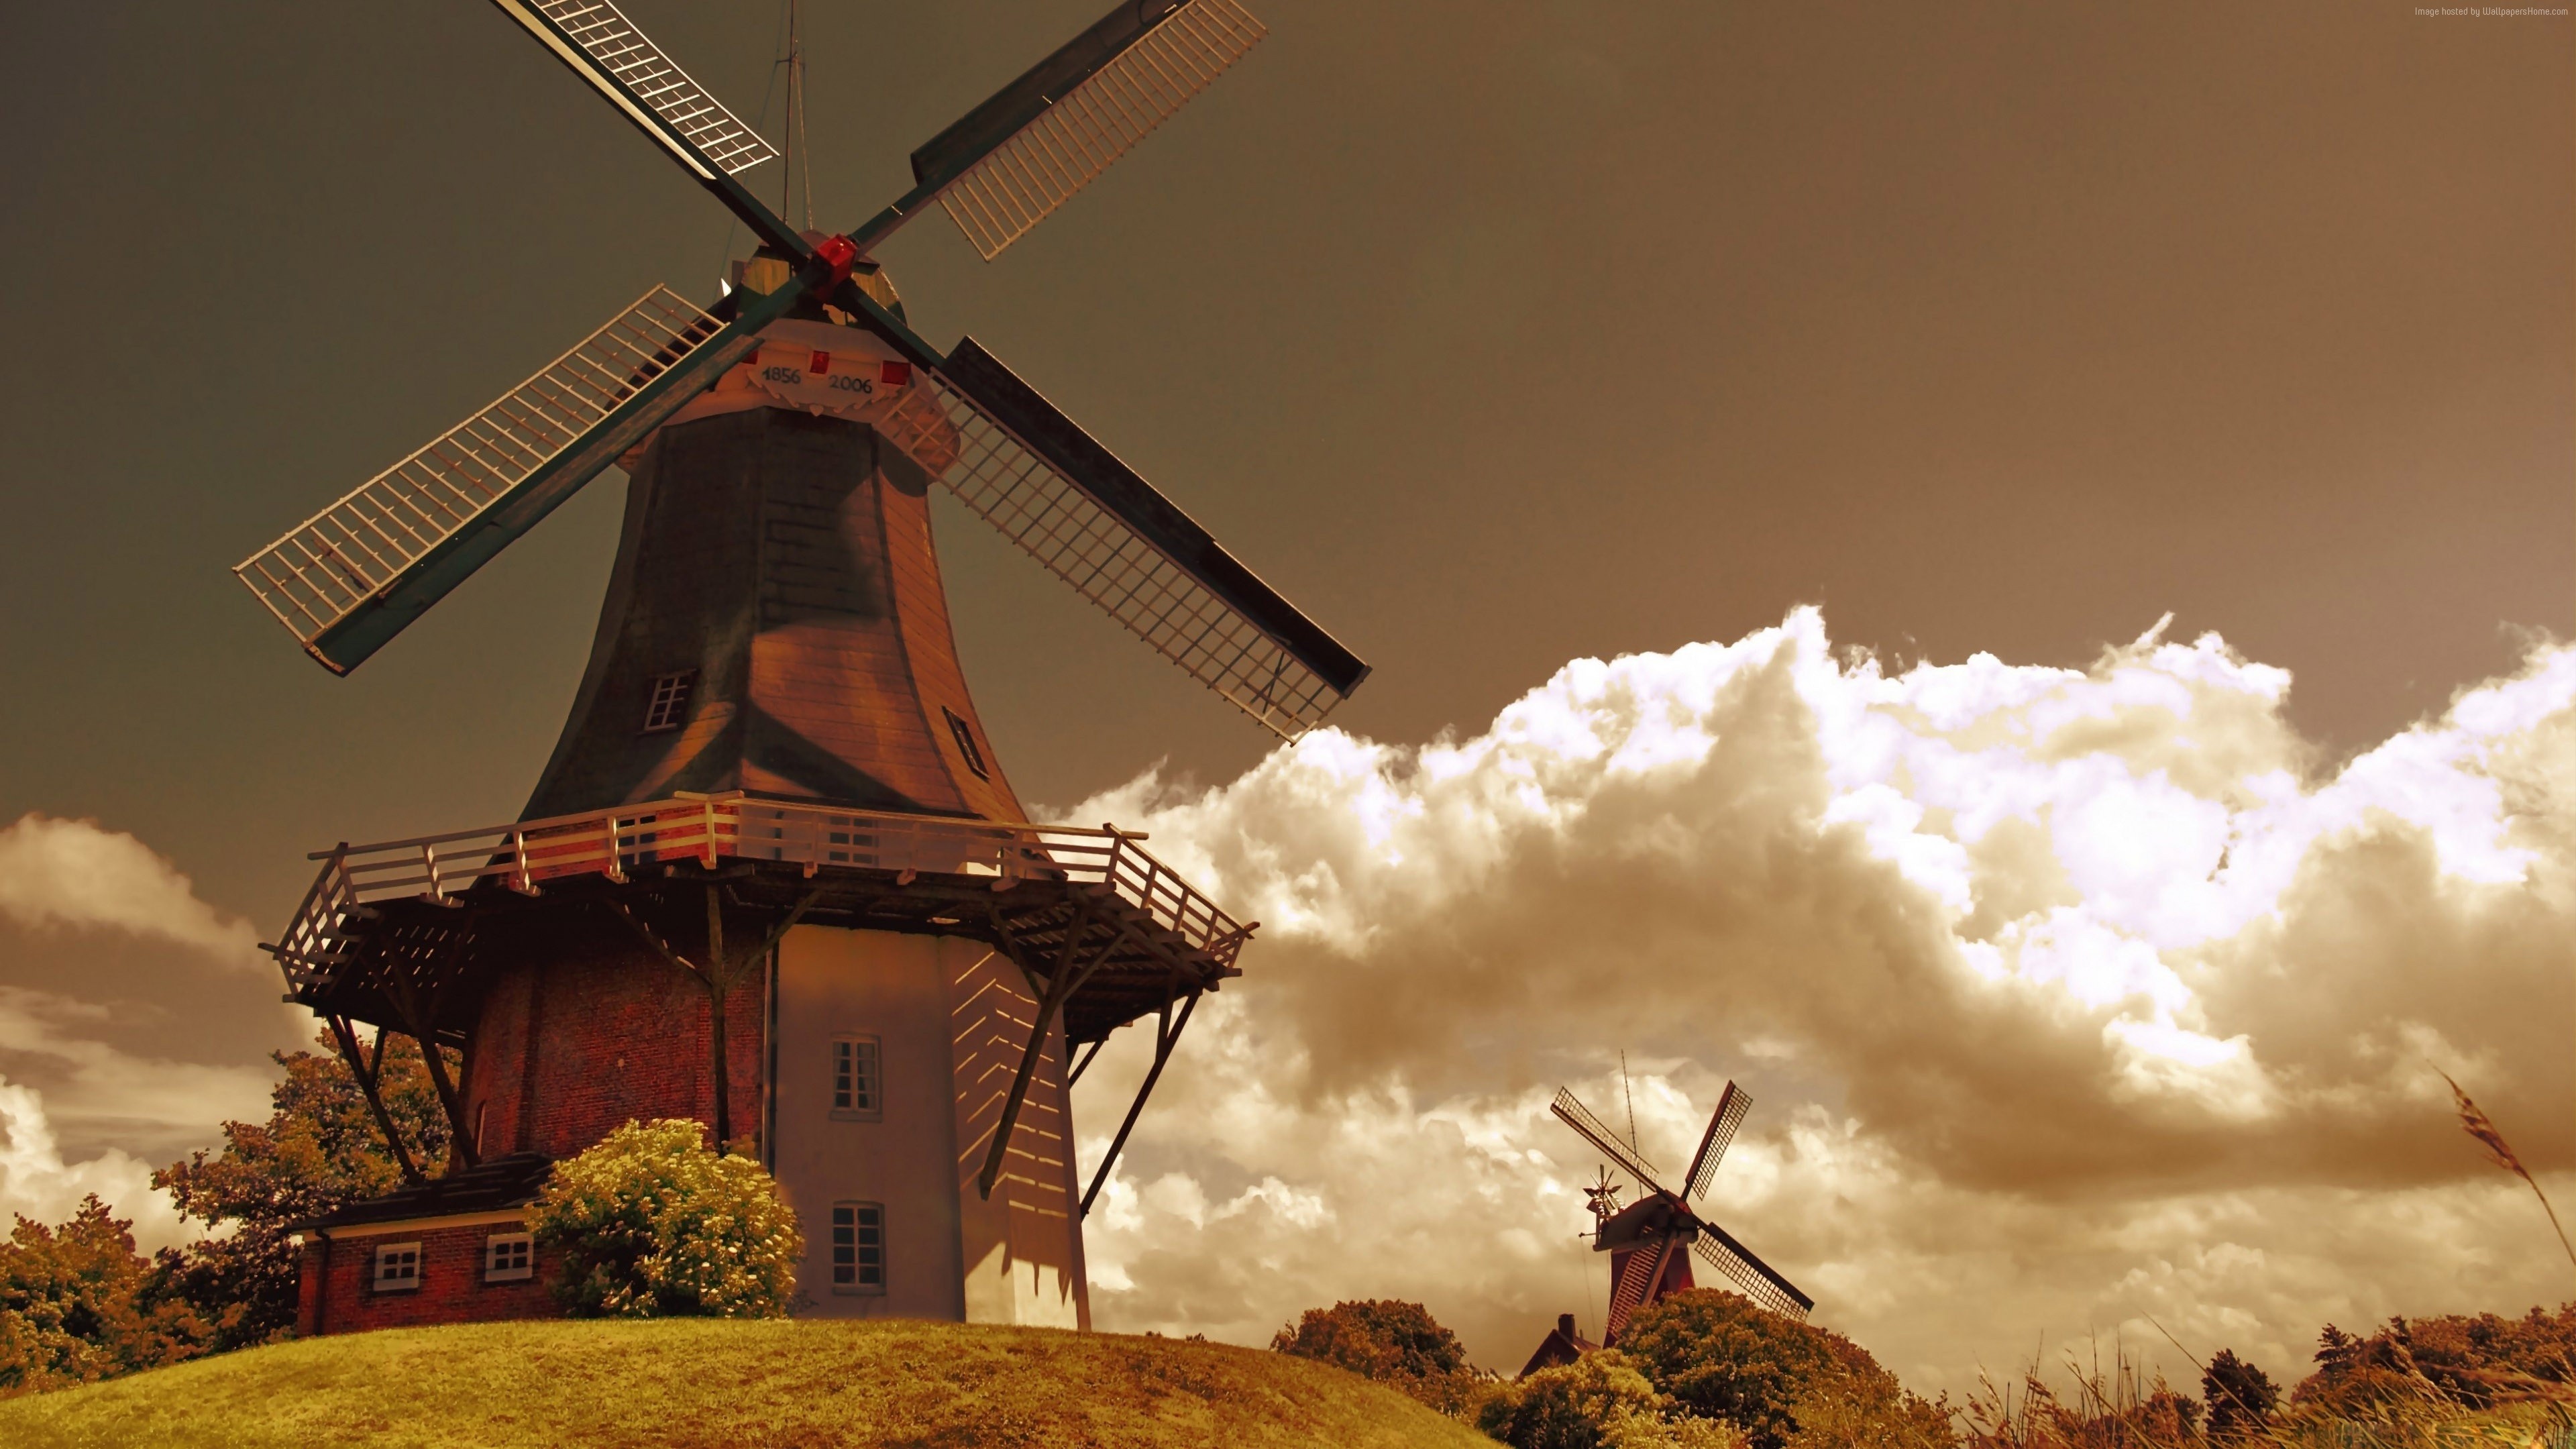 Windmills at Kinderdijk, Dutch windmill wallpapers, 3840x2160 4K Desktop